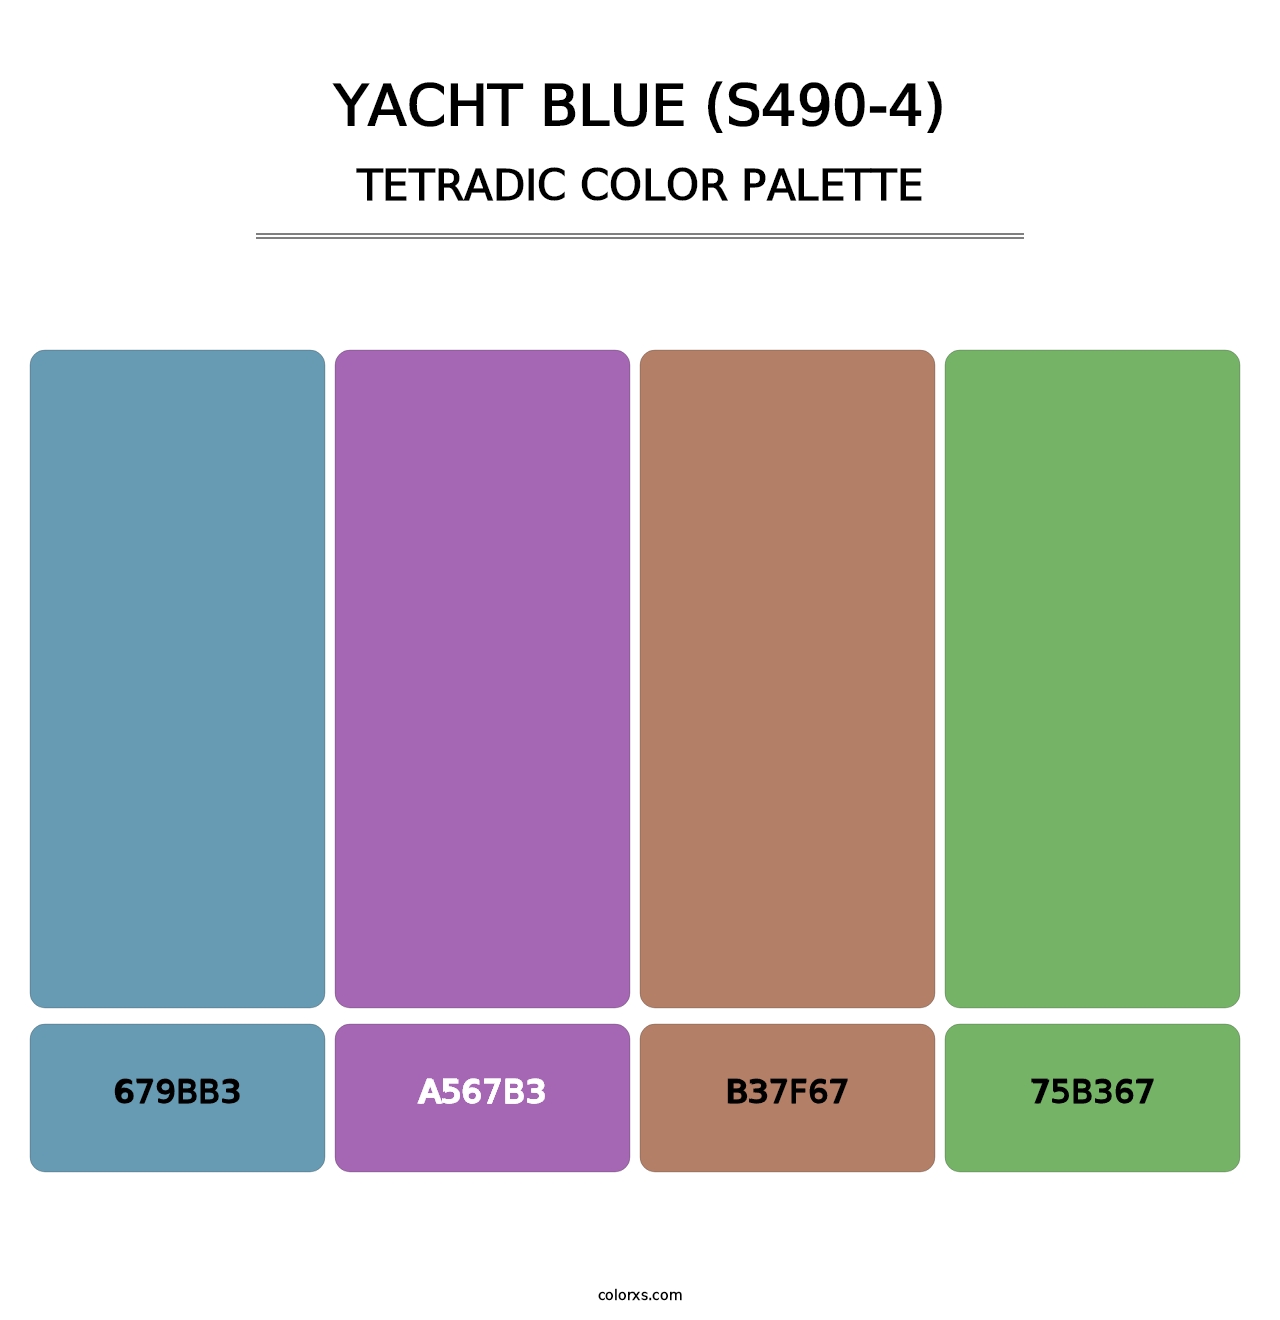 Yacht Blue (S490-4) - Tetradic Color Palette